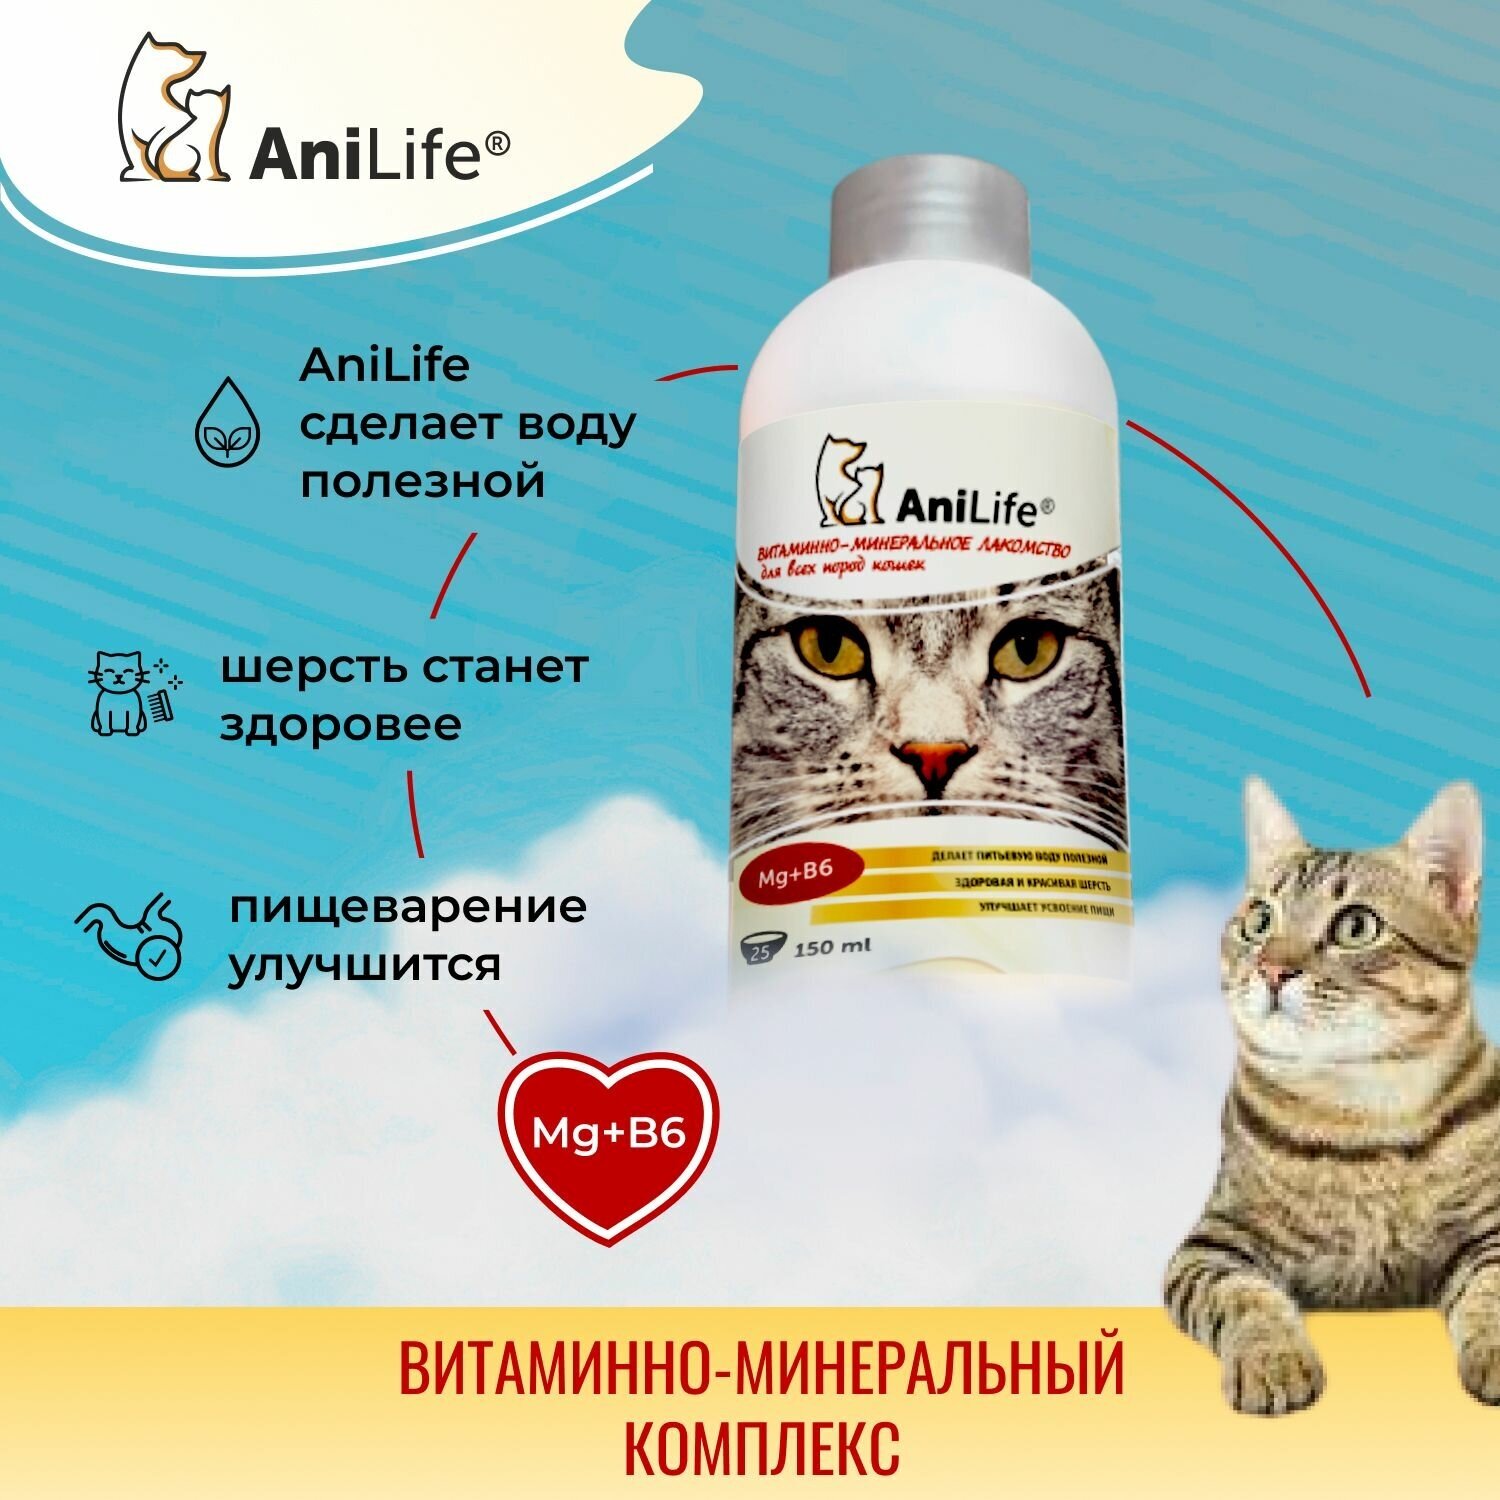 Витаминно-минеральное лакомство для кошек AniLife для всех пород кошек, жидкое, 150 мл, магний, витамин Б6, для шерсти, для кожи, антистресс